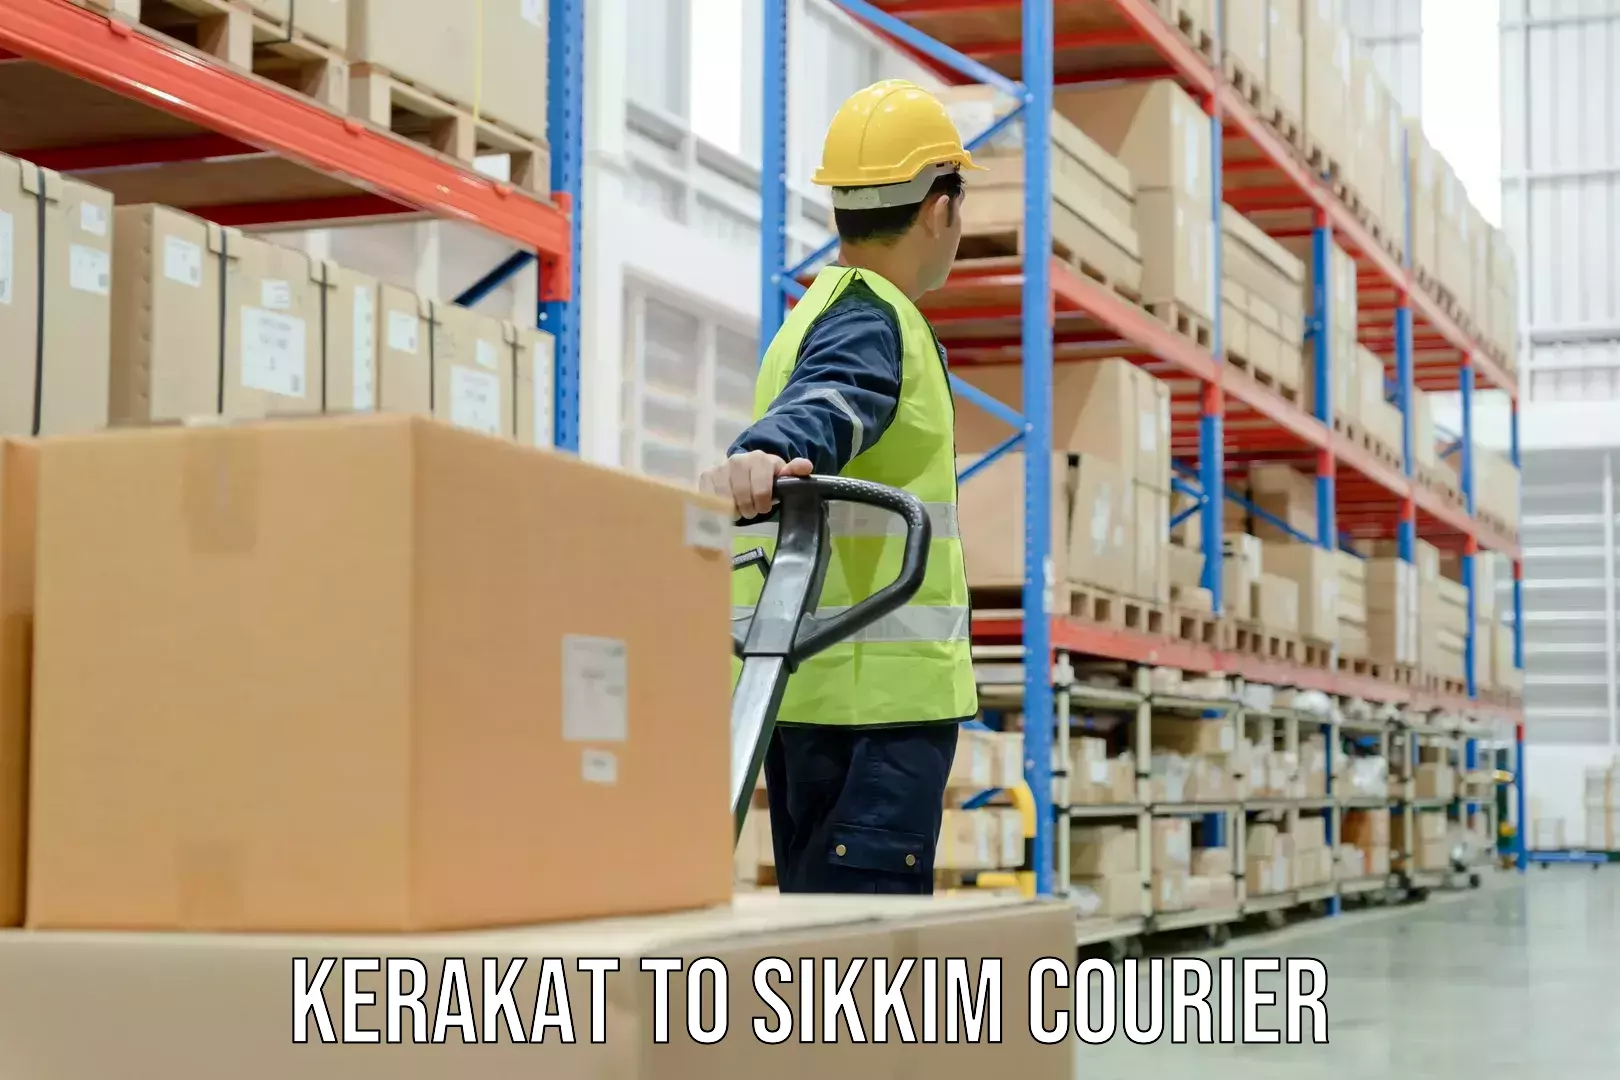 Customer-centric shipping Kerakat to Namchi